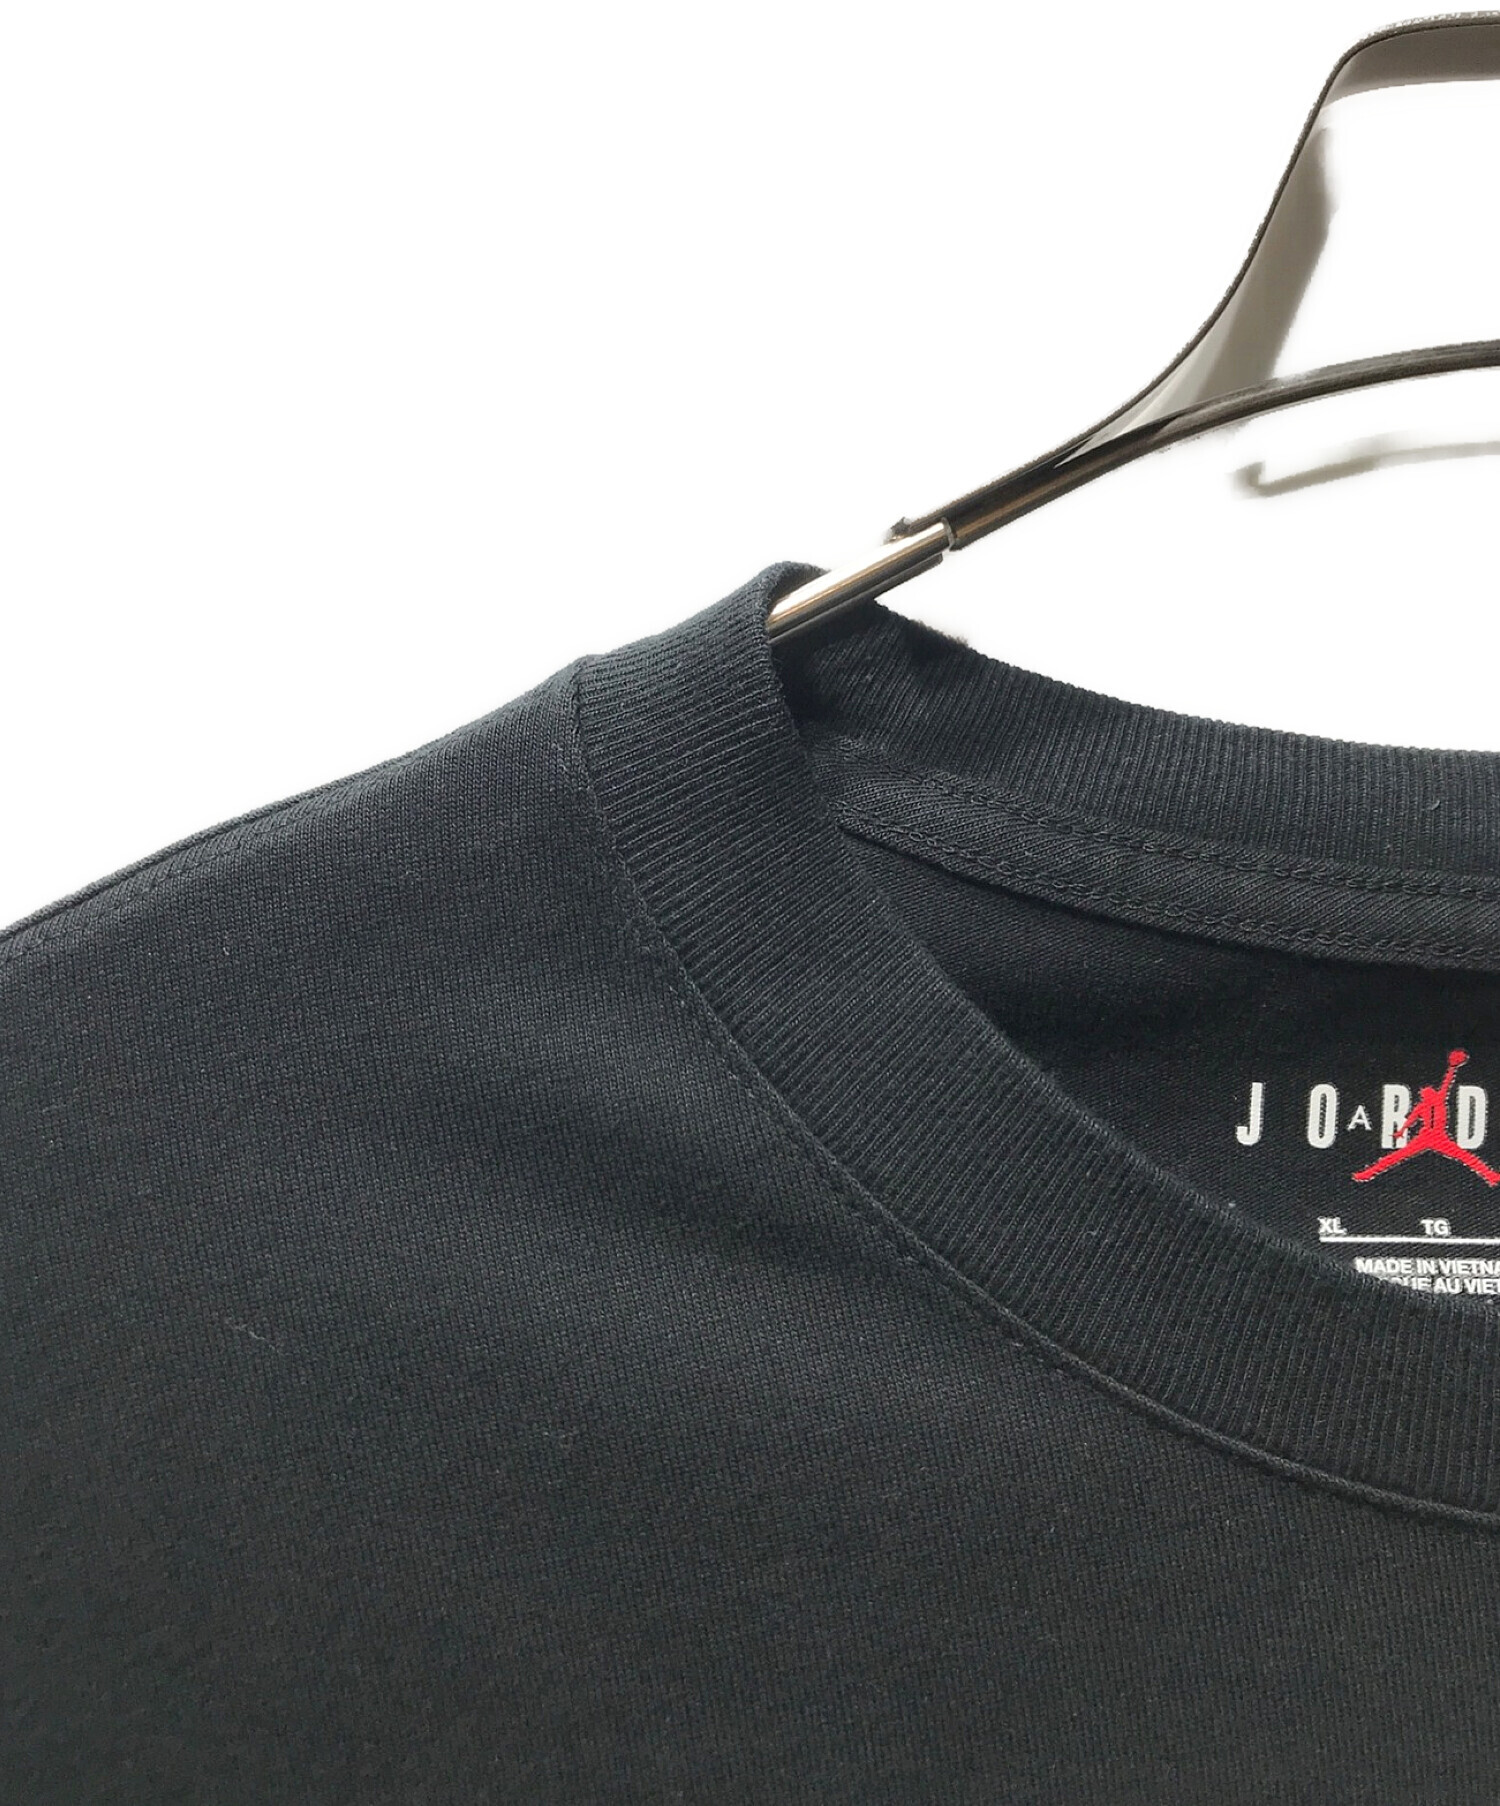 JORDAN (ジョーダン) UNDEFEATED (アンディーフィーテッド) プリントTシャツ ブラック サイズ:XL